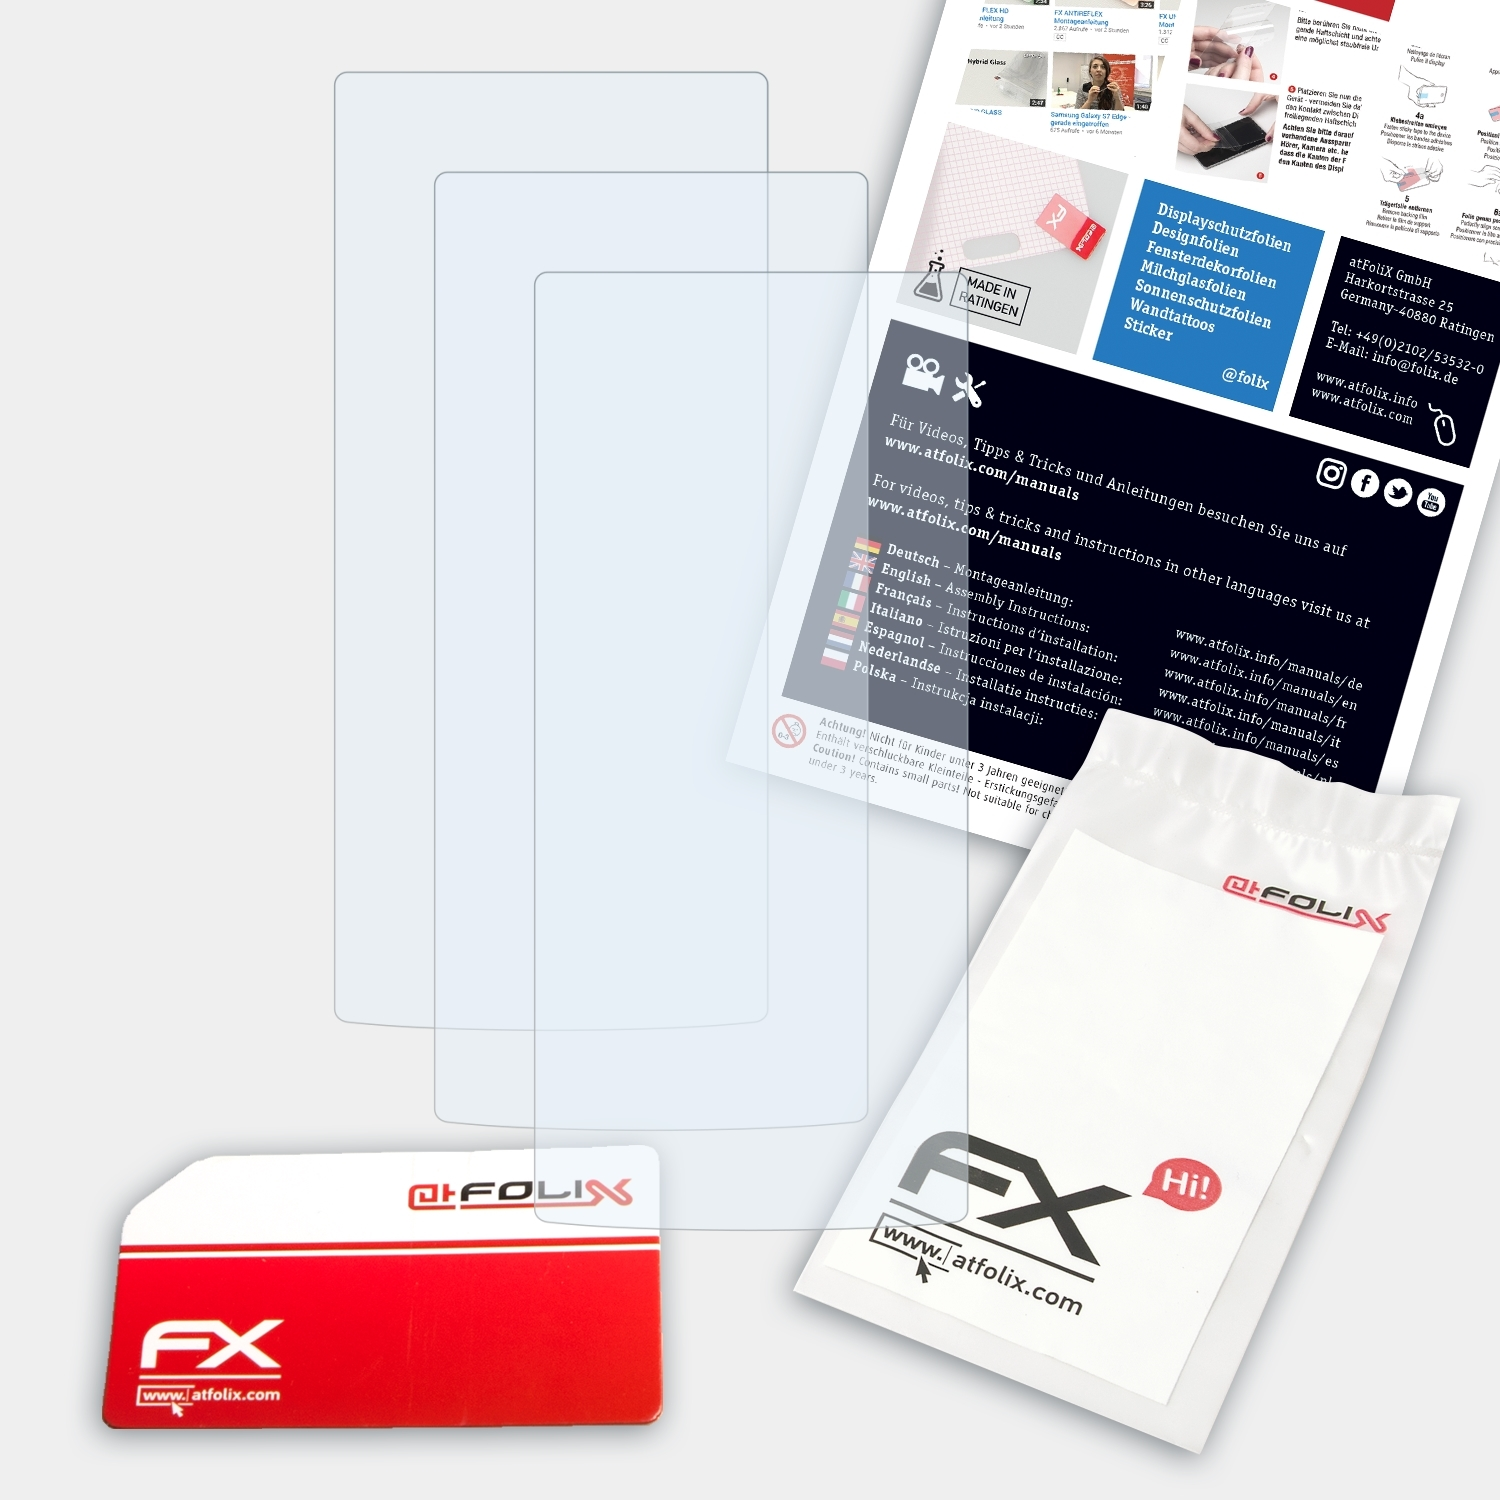 ATFOLIX 3x FX-Clear Displayschutz(für BT) Lenco Xemio-760